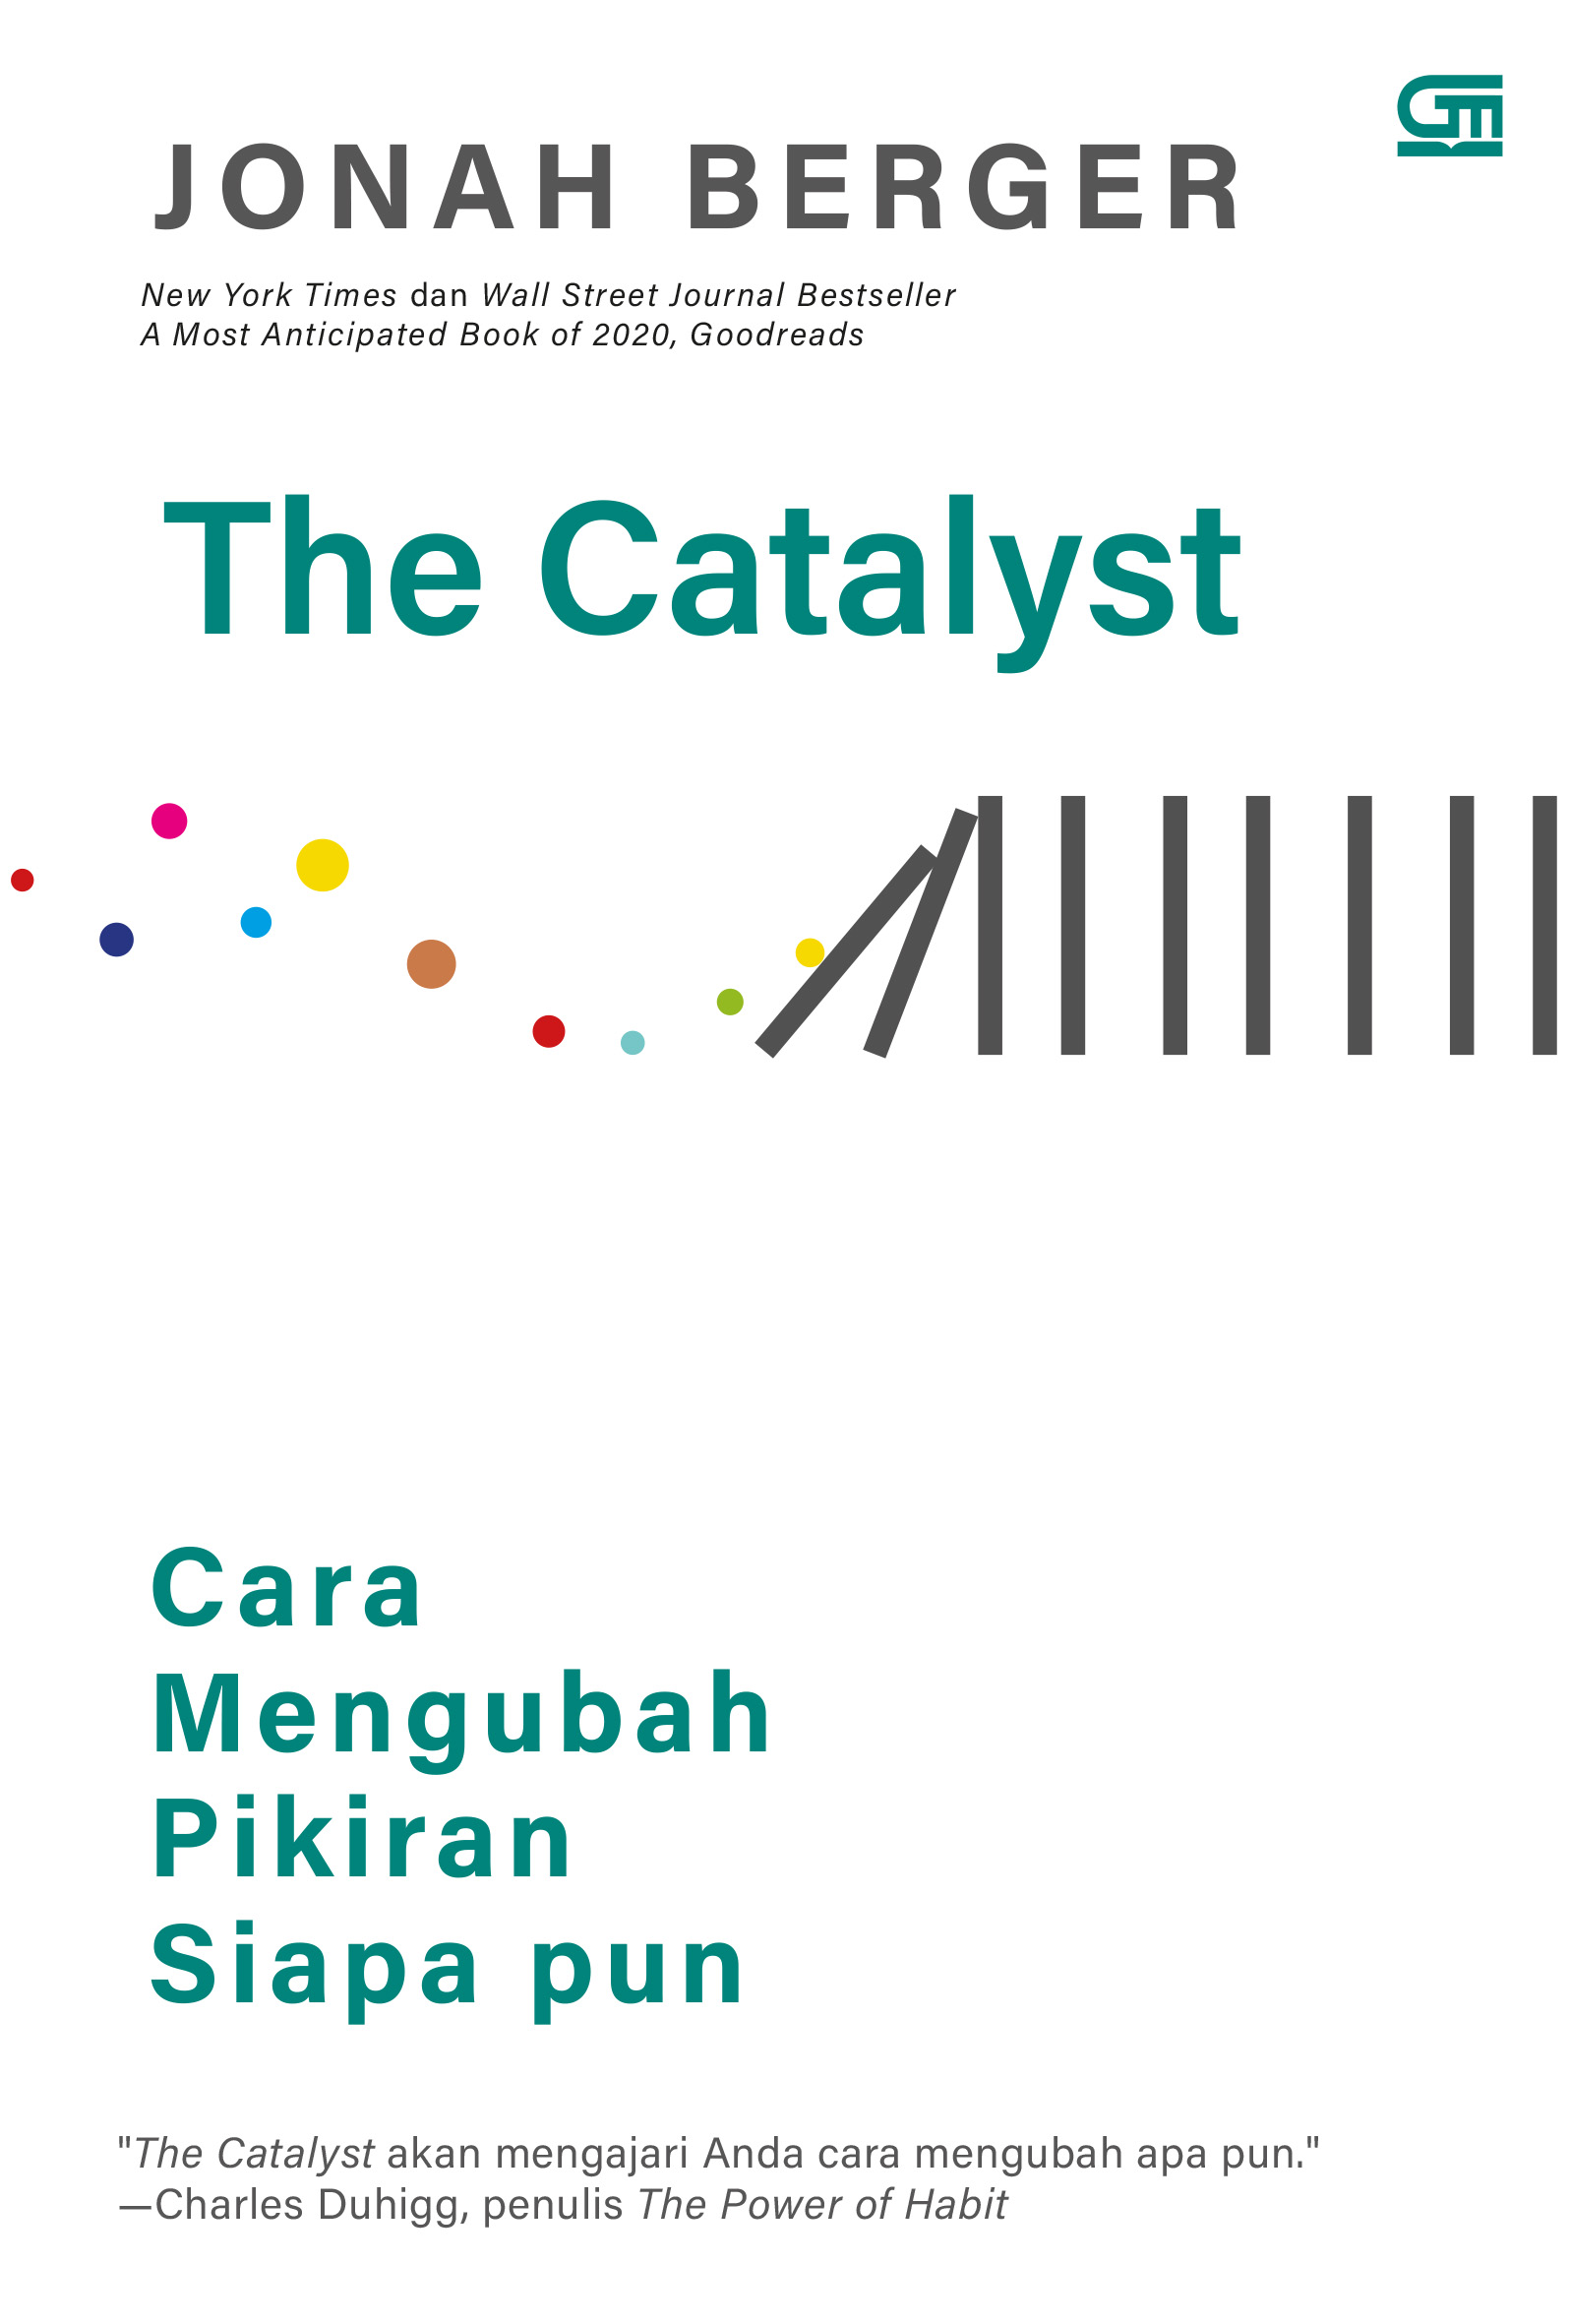 The Catalyst: Cara Mengubah Pikiran Siapa pun